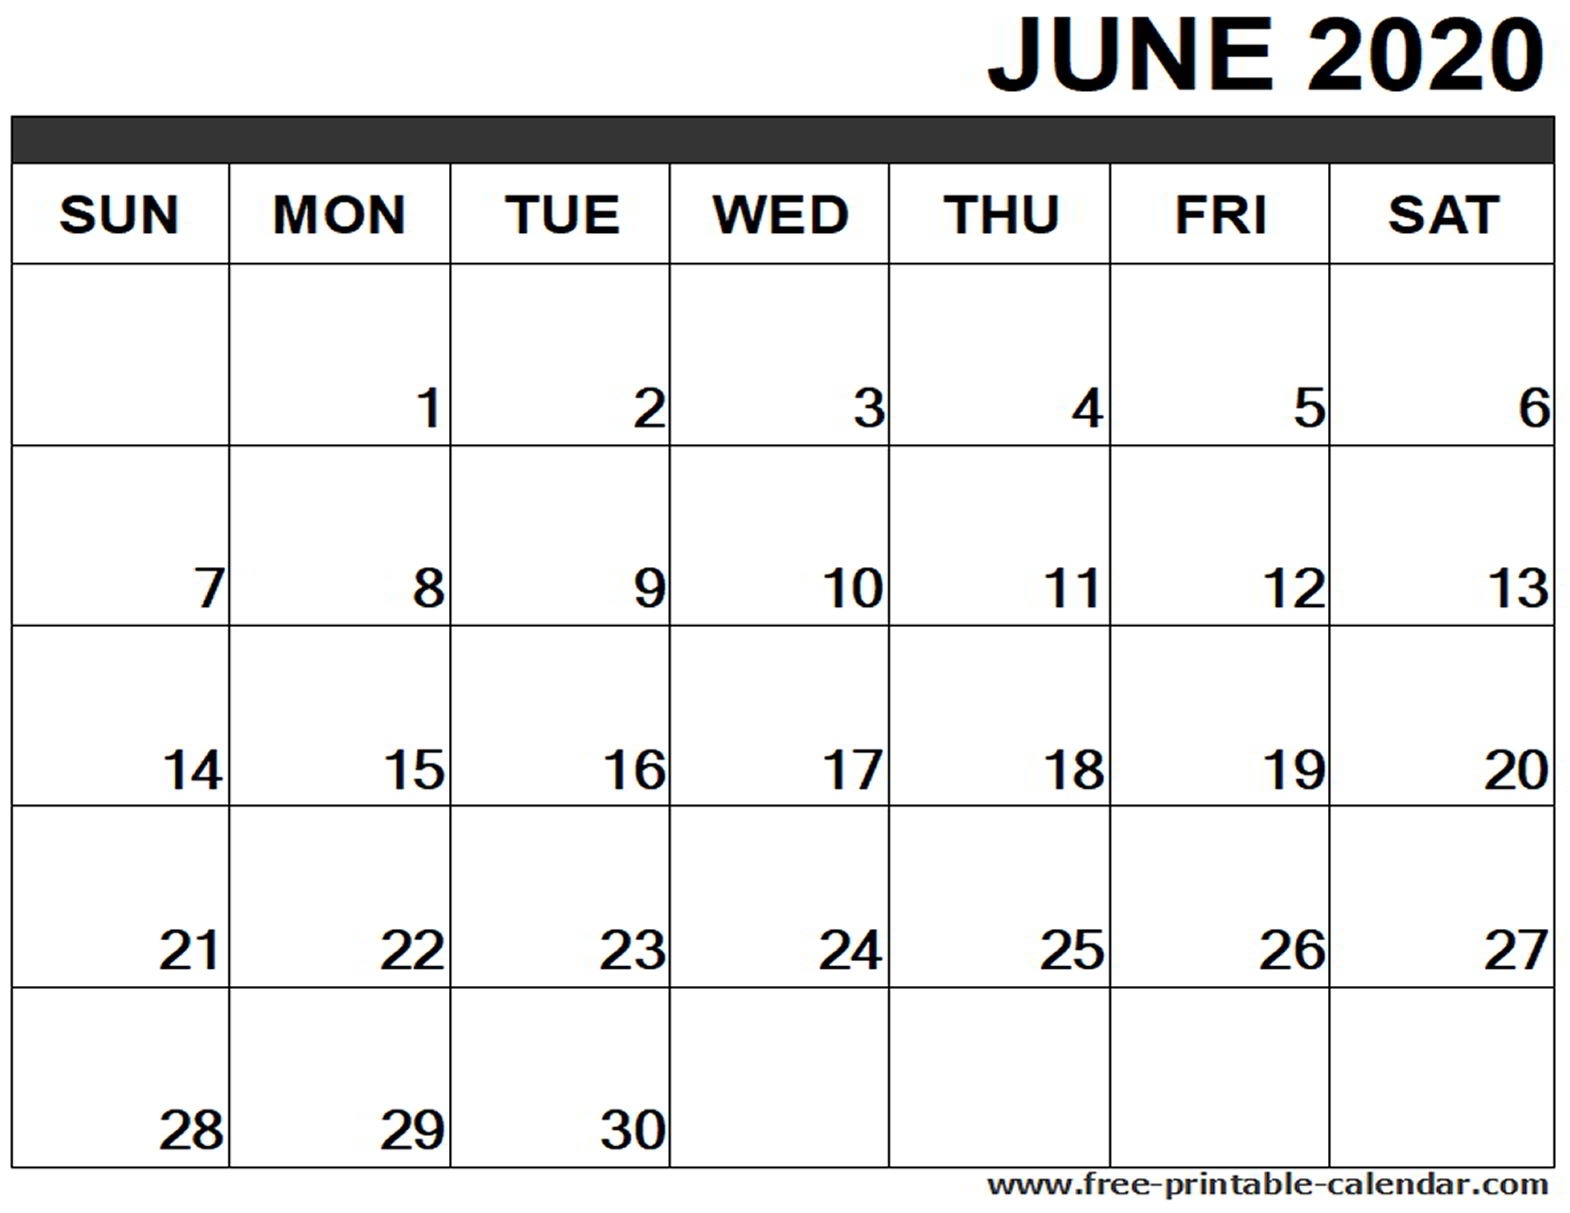 June 2020 Calendar Printable - Free-Printable-Calendar Incredible June 2020 Calendar Canada